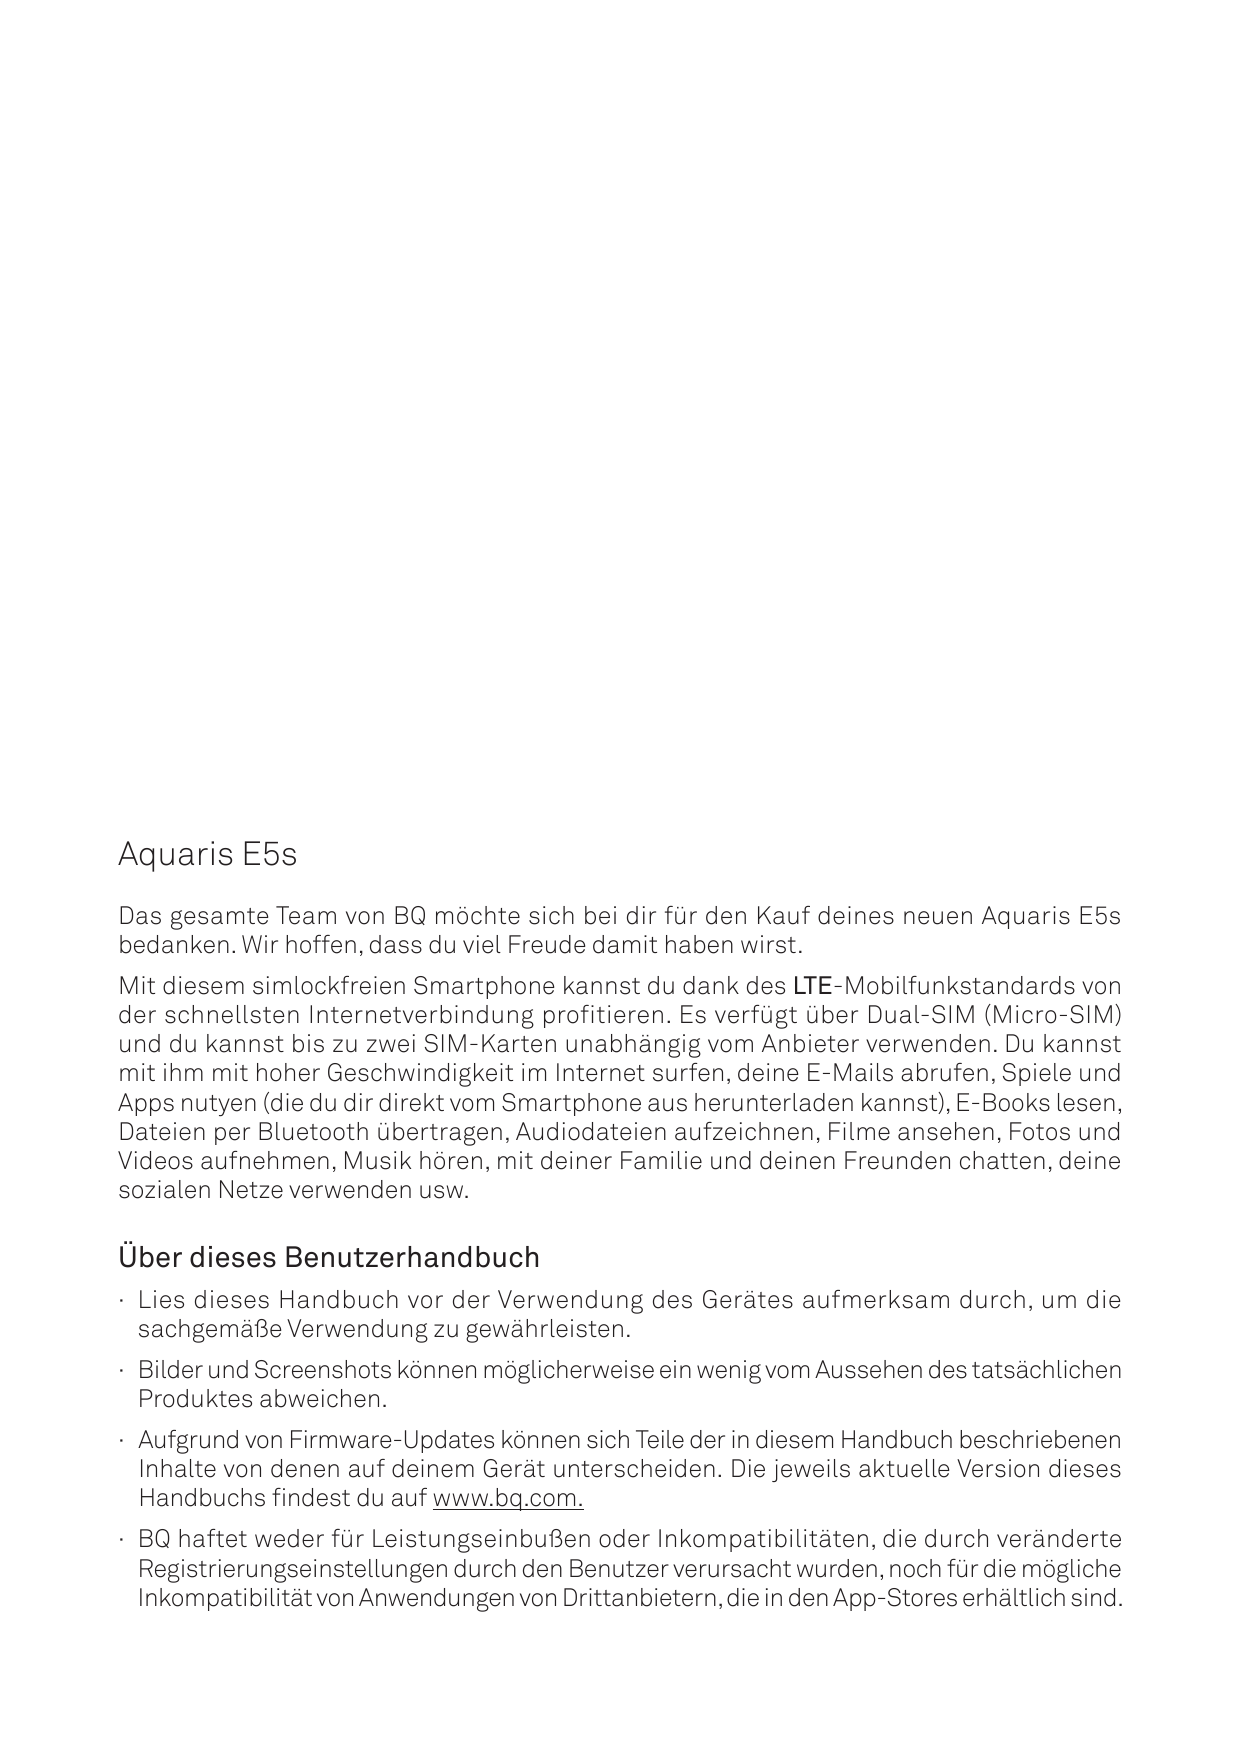 Aquaris E5sDas gesamte Team von BQ möchte sich bei dir für den Kauf deines neuen Aquaris E5sbedanken. Wir hoffen, dass du viel F